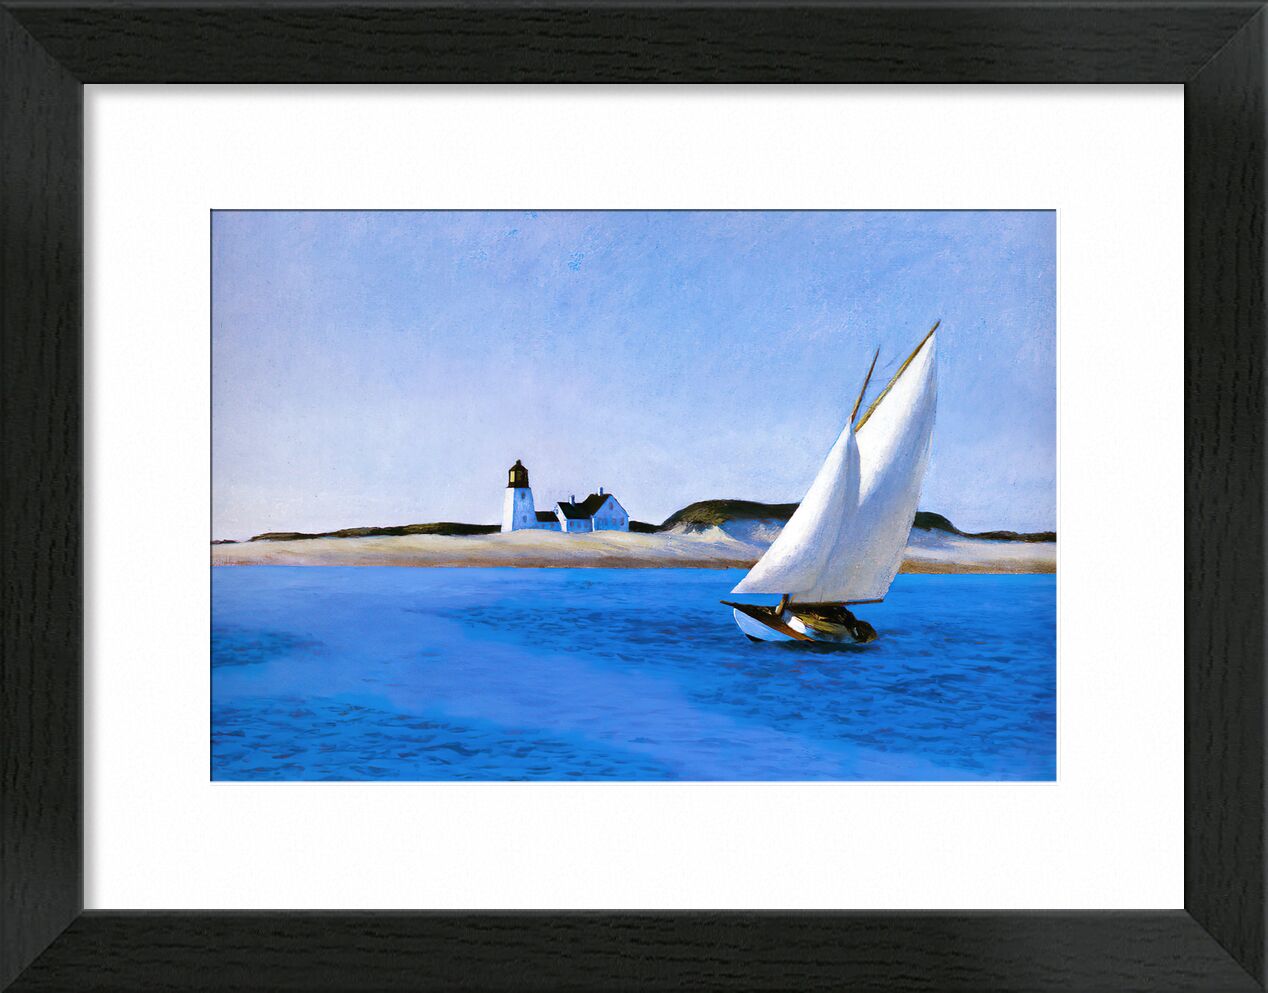 Das Lange Bein - Edward Hopper von Bildende Kunst, Prodi Art, blaues Meer, blau, Strand, Leuchtturm, yacht, Ozean, Meer, Boot, Edward Hopper, Trichter